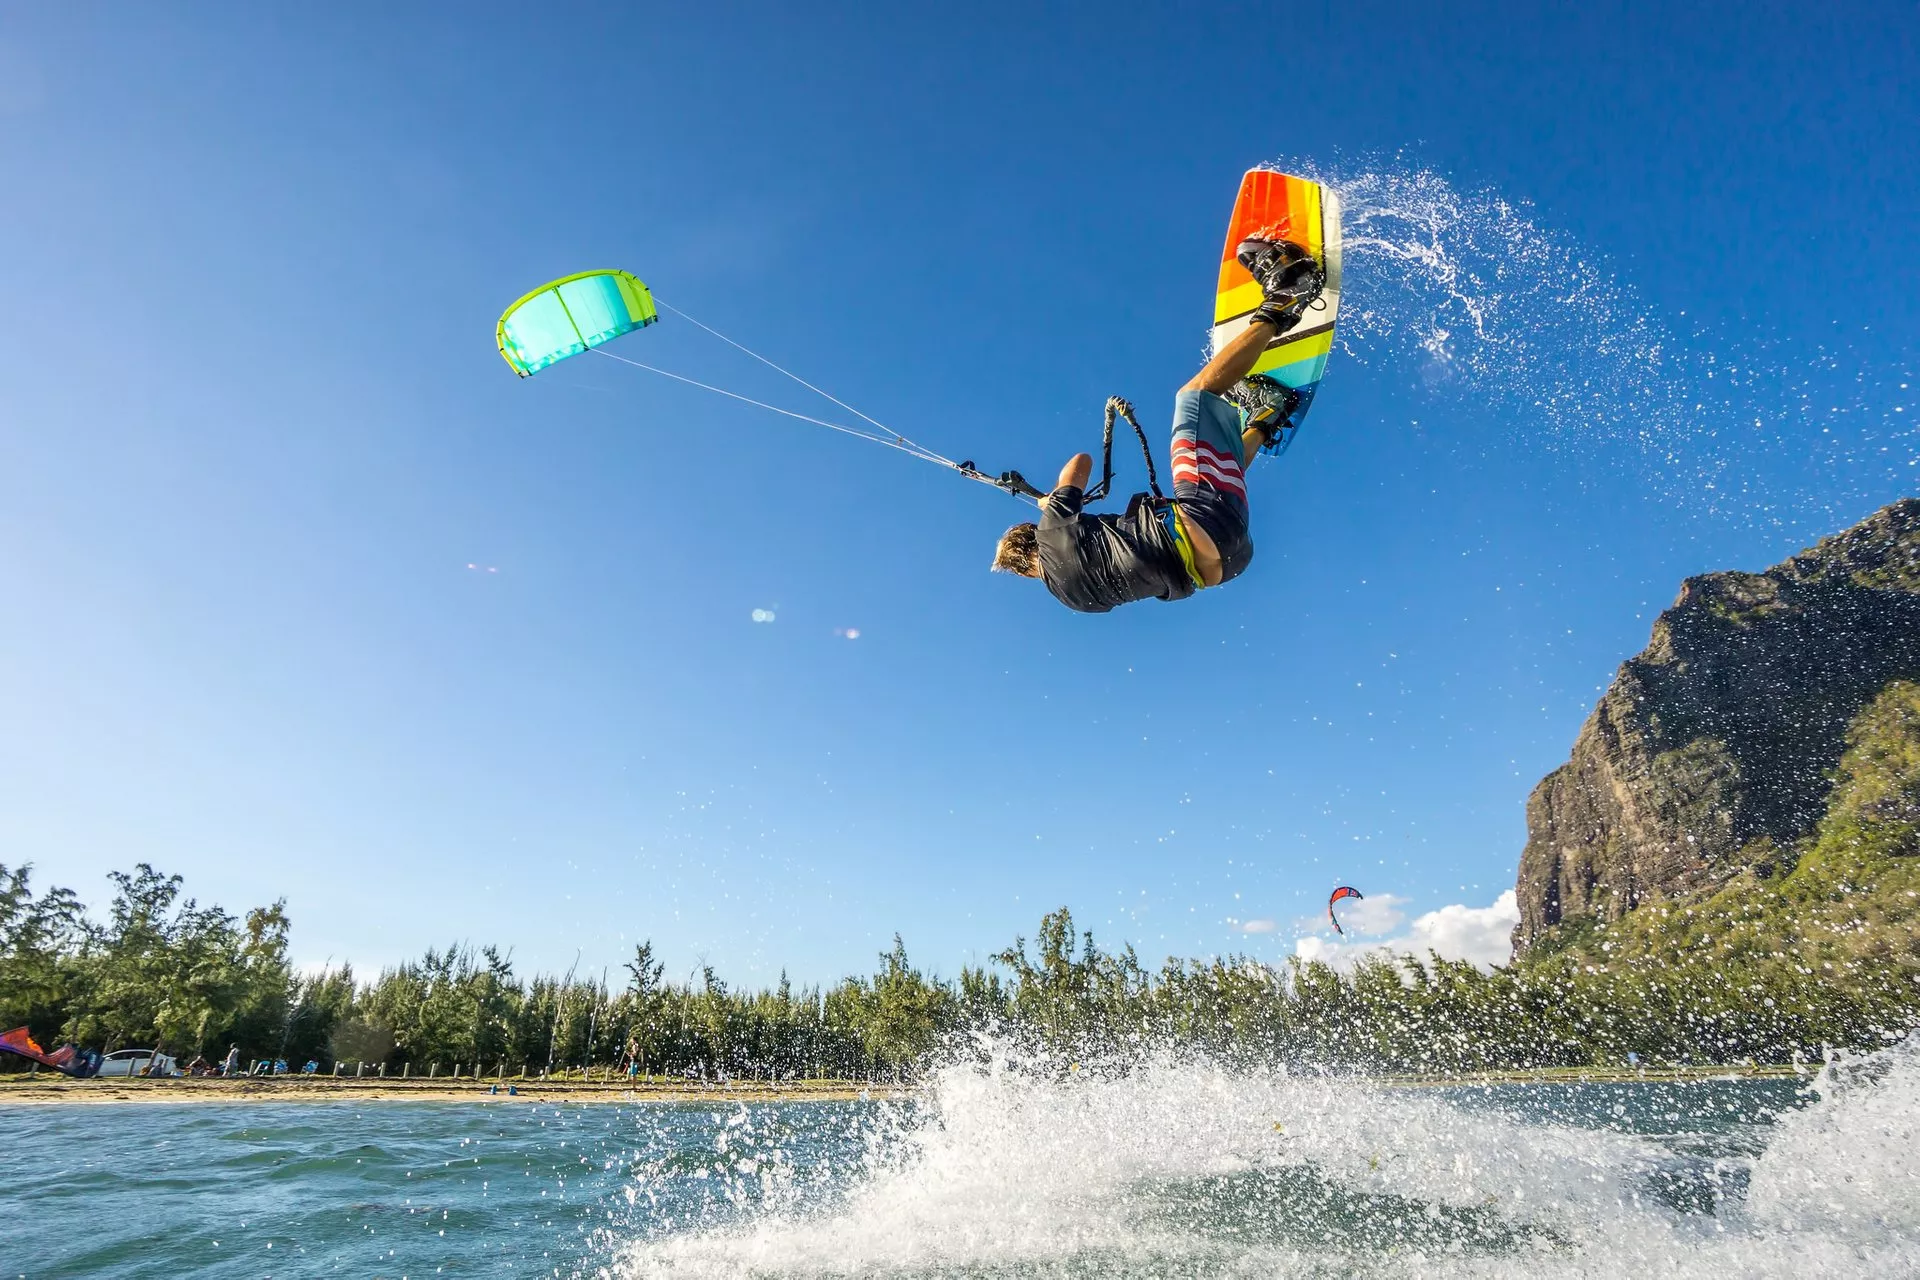 Liberan Surf - Windsurfing , Kitesurfing & Camping in Croatia, Europe | Surfing,Kitesurfing,Windsurfing - Rated 1.4